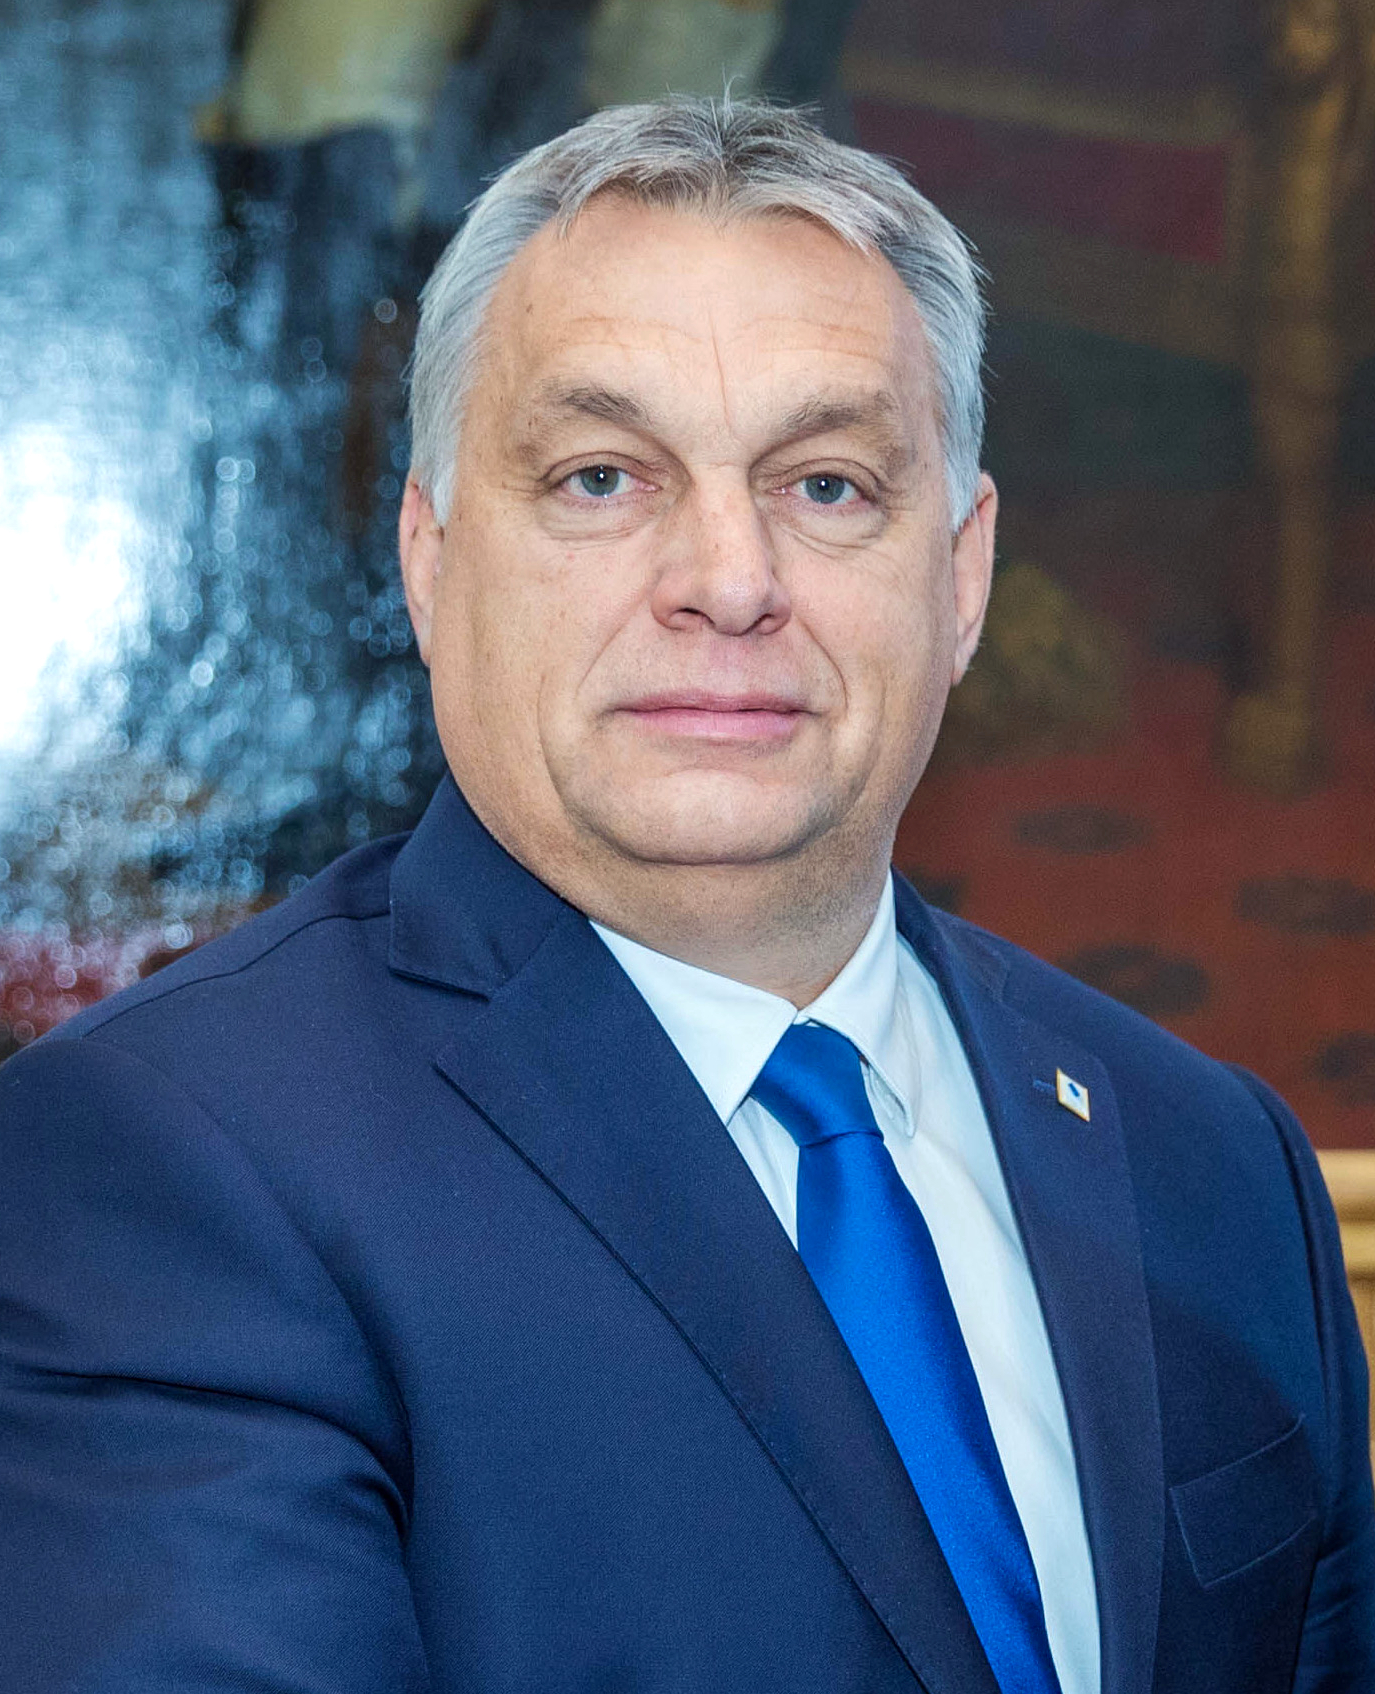 Виктор Орбан: биография премьер-министра Венгрии